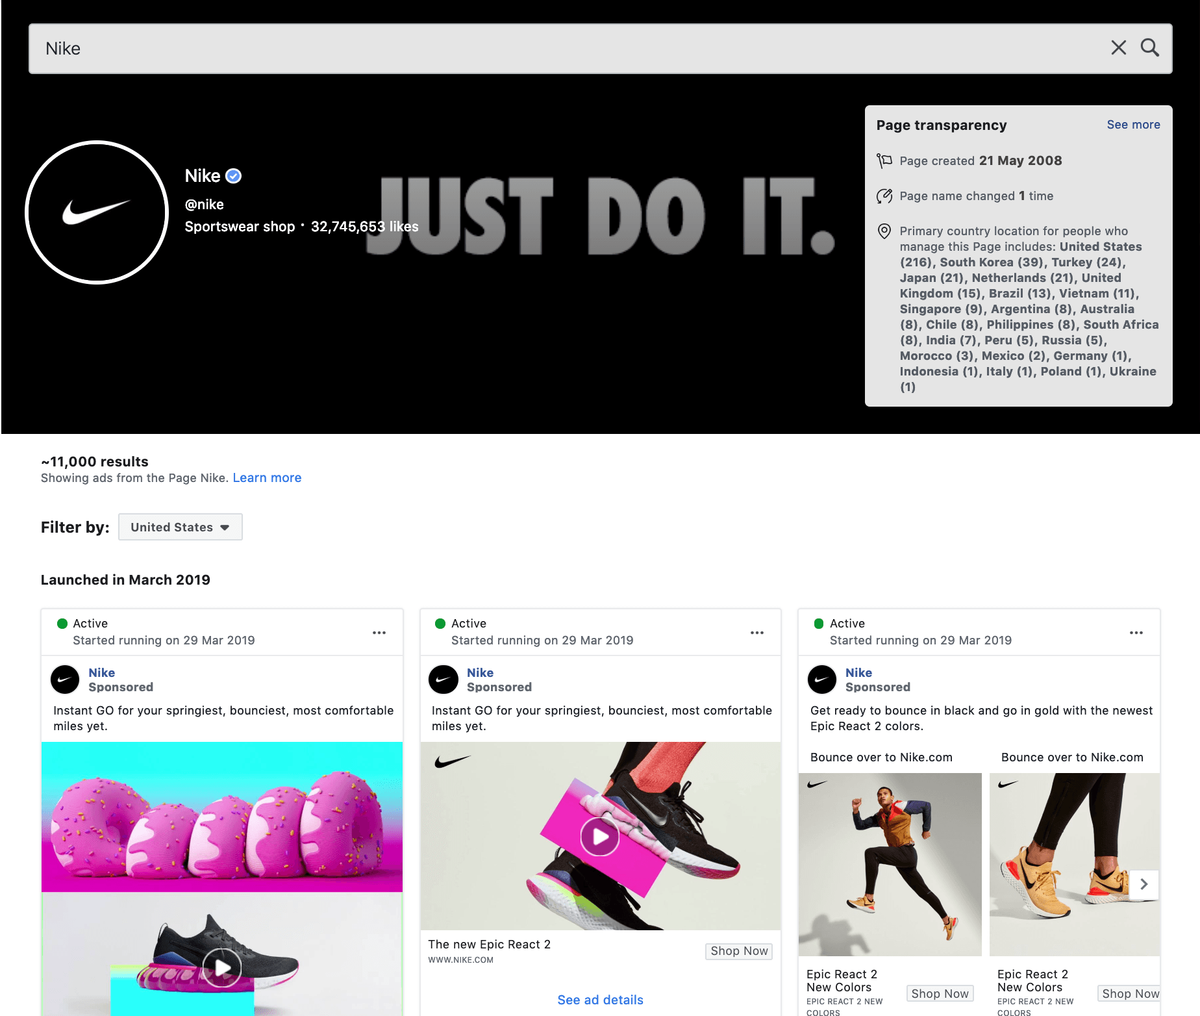 Impormasyon at Ads ng Nike sa Facebook